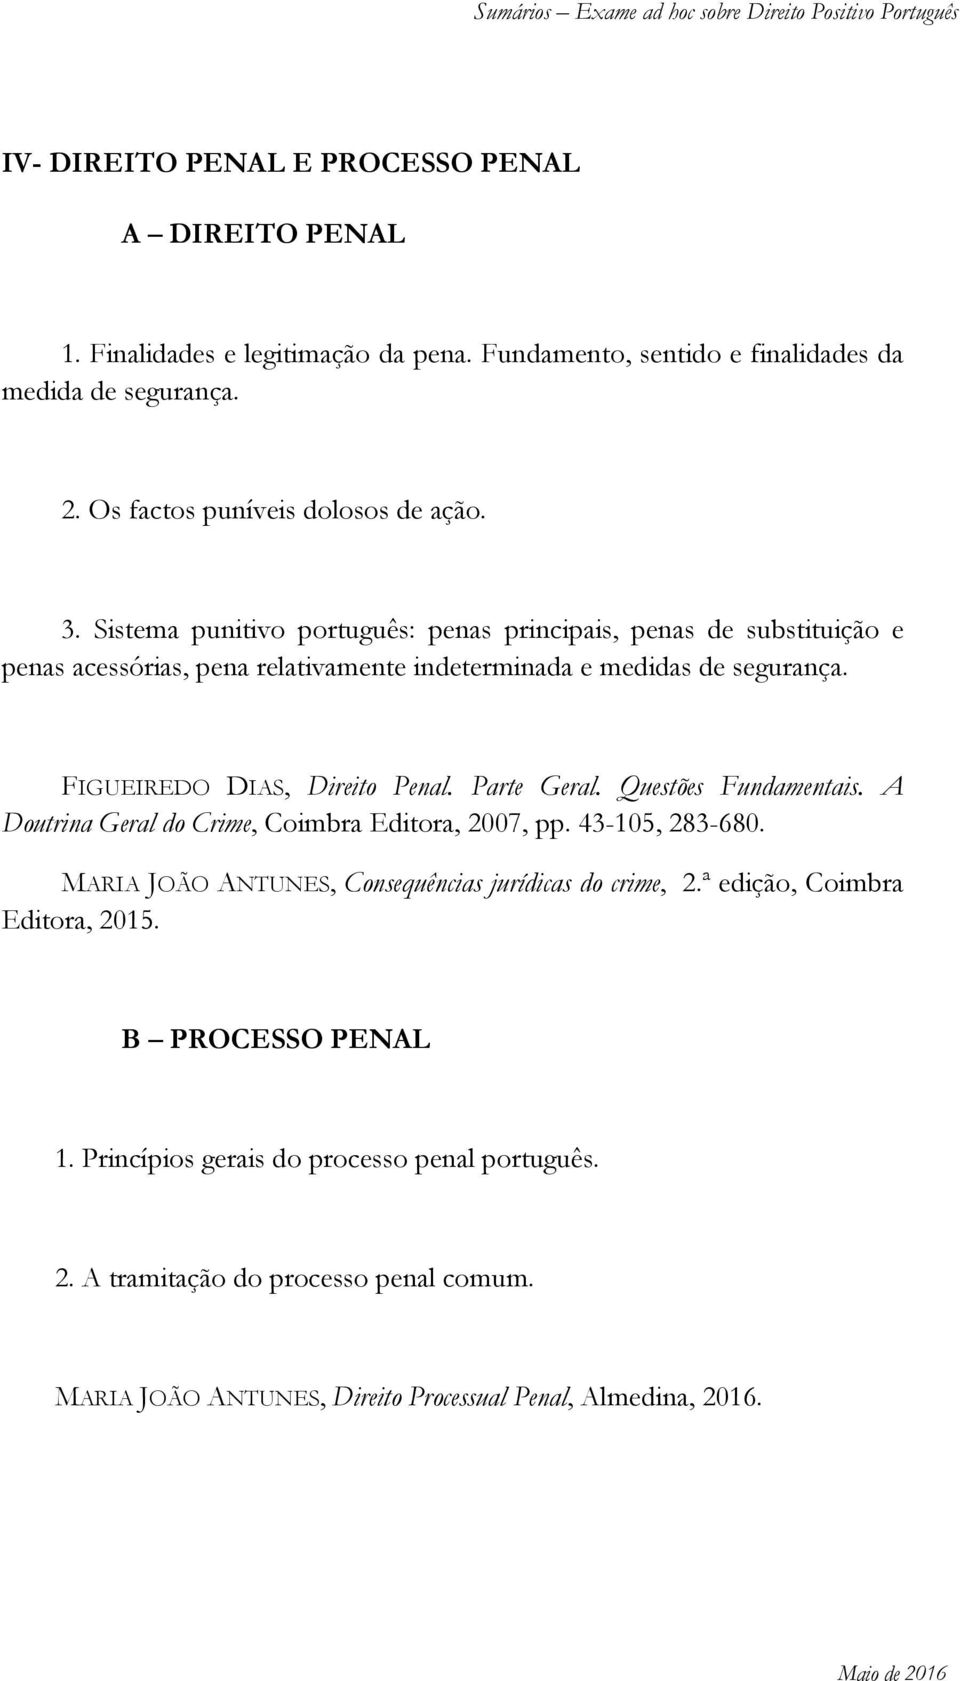 FIGUEIREDO DIAS, Direito Penal. Parte Geral. Questões Fundamentais. A Doutrina Geral do Crime, Coimbra Editora, 2007, pp. 43-105, 283-680.